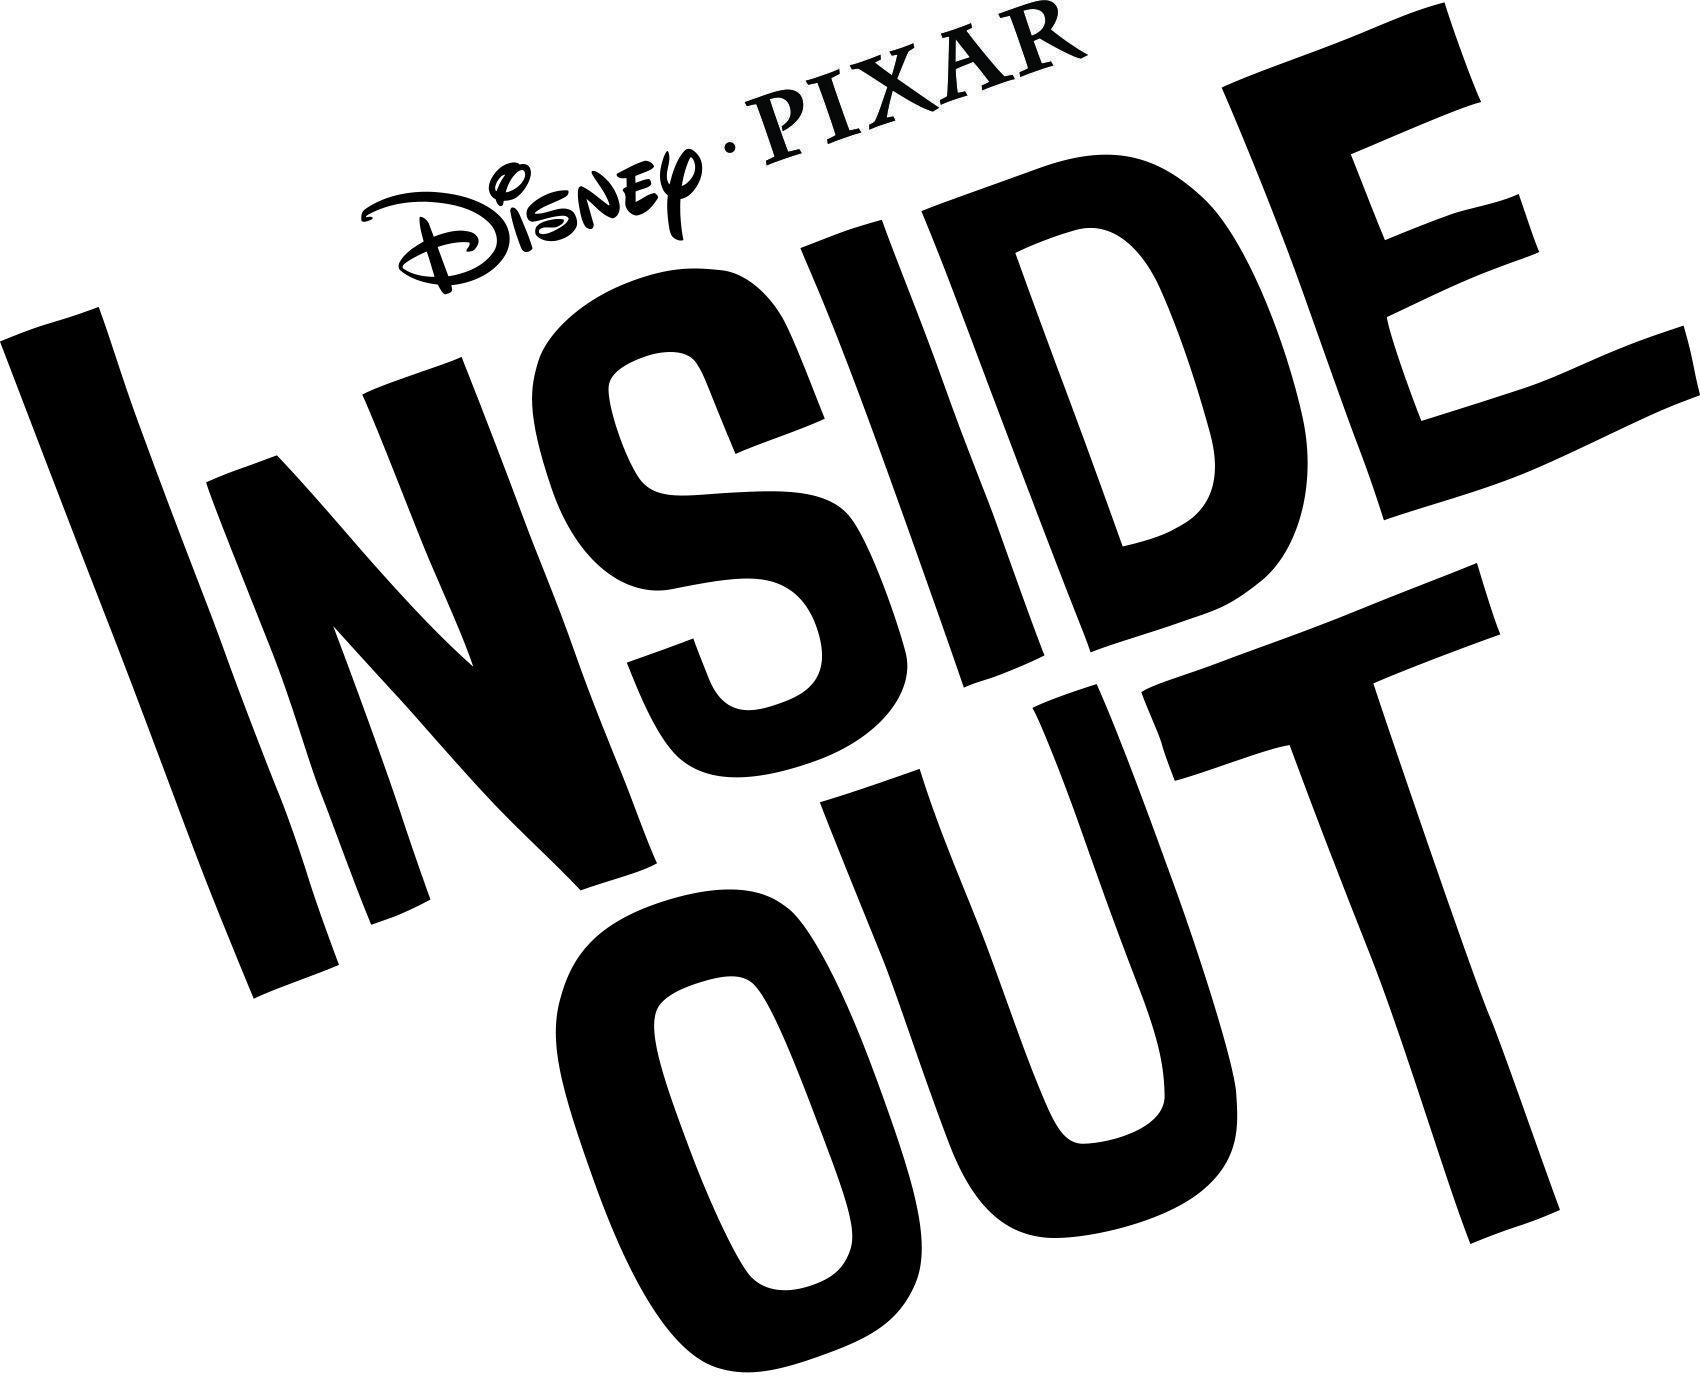 Disney Pixar Lava Logo - Pixar releases Inside Out title treatment and reveals Lava short ...